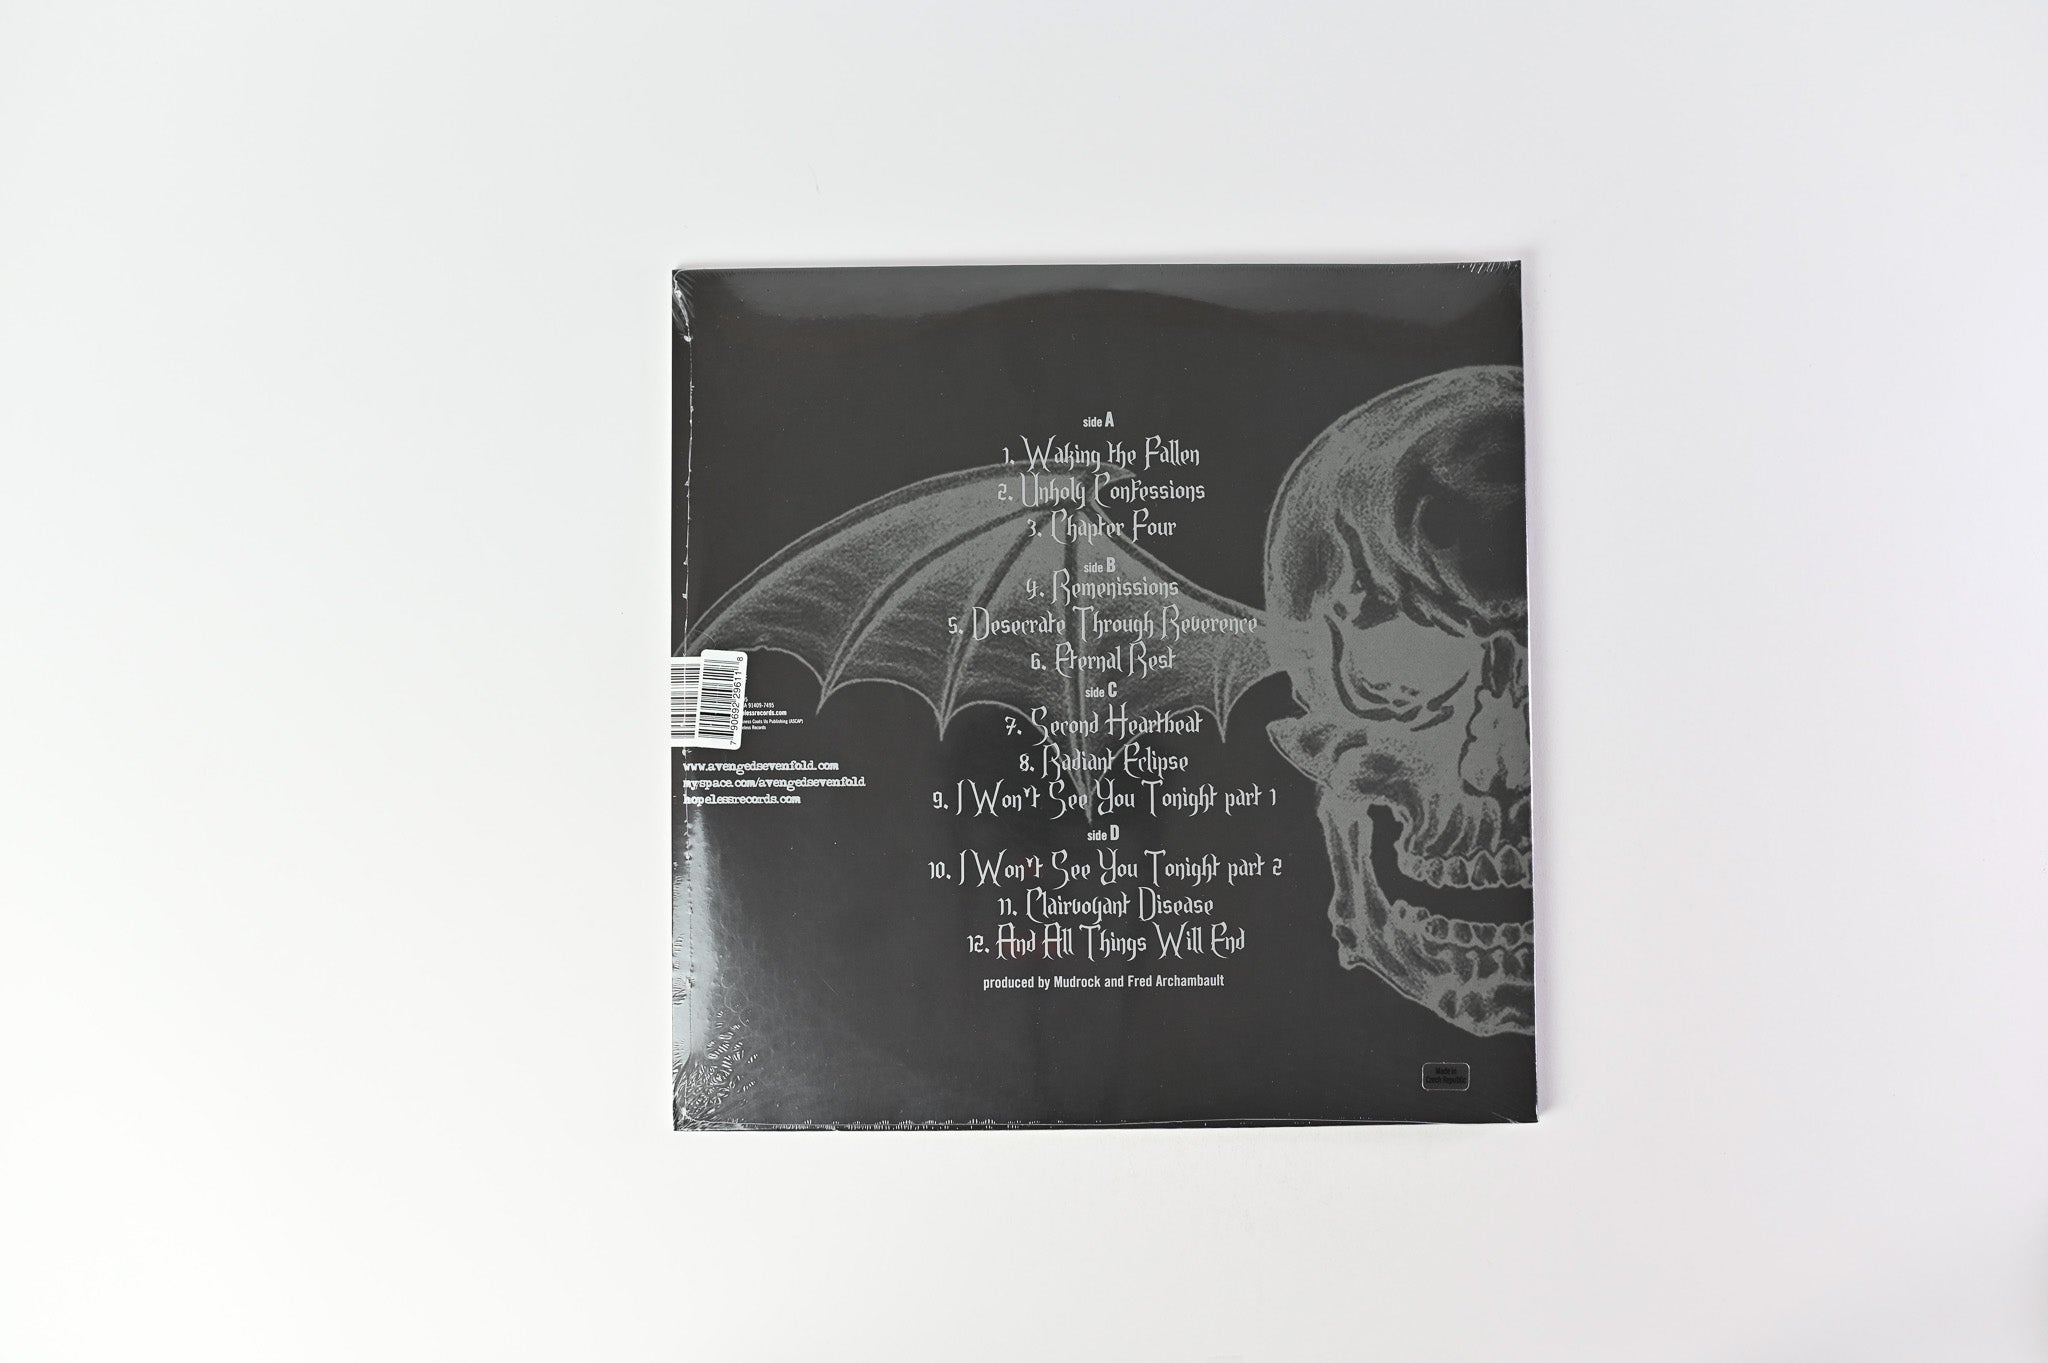 Avenged Sevenfold - Waking The Fallen on Hopeless Limited Bone White Reissue Sealed